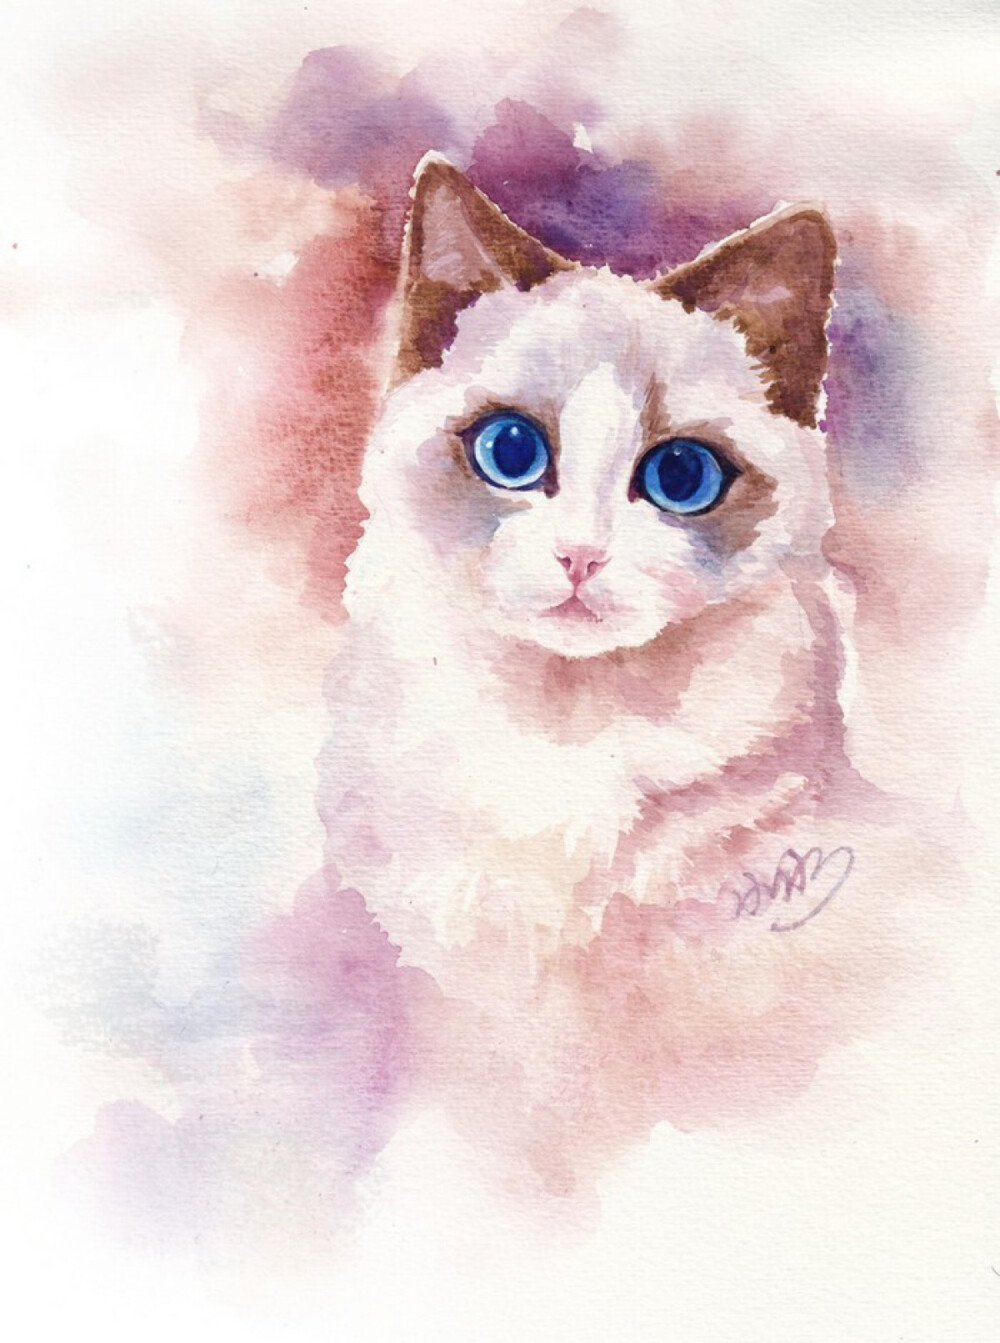 眼睛超美的猫咪手绘插画作品。 你 有朋友 有亲人 有学业 有娱乐 而它只有你 ——by悠利宠物店